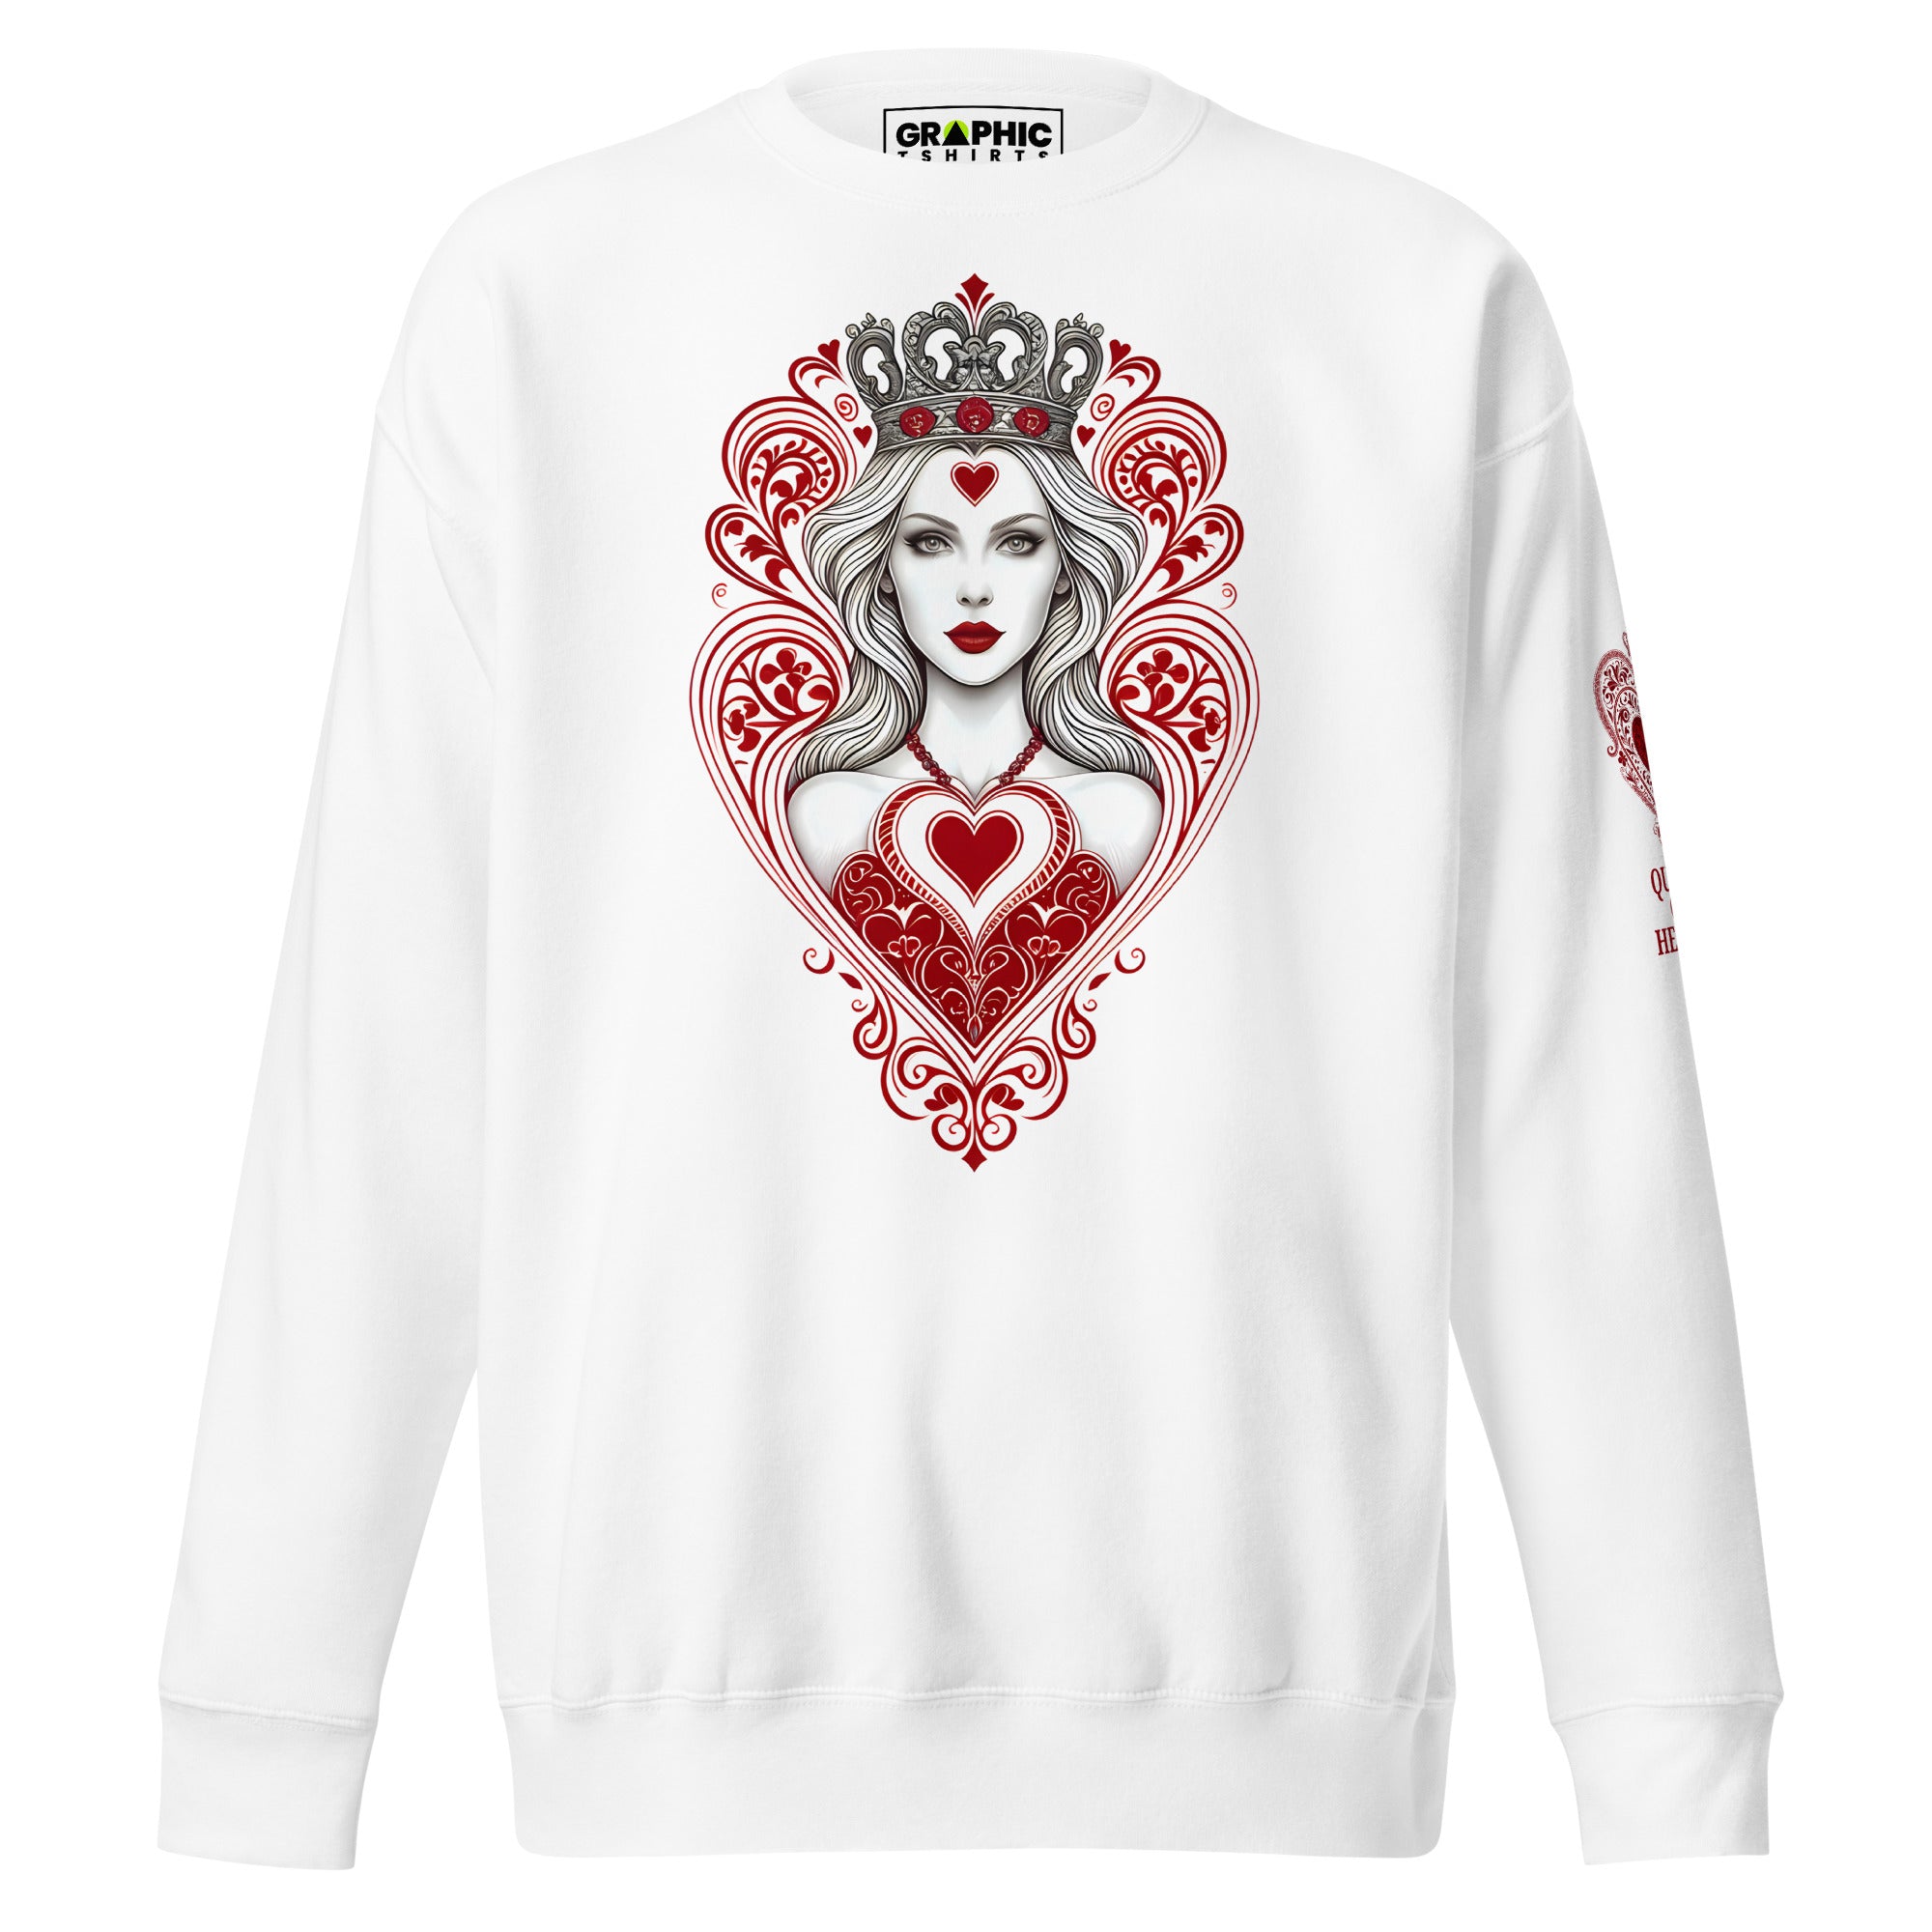 Unisex Premium Sweatshirt - Queen Of Hearts Series v.11